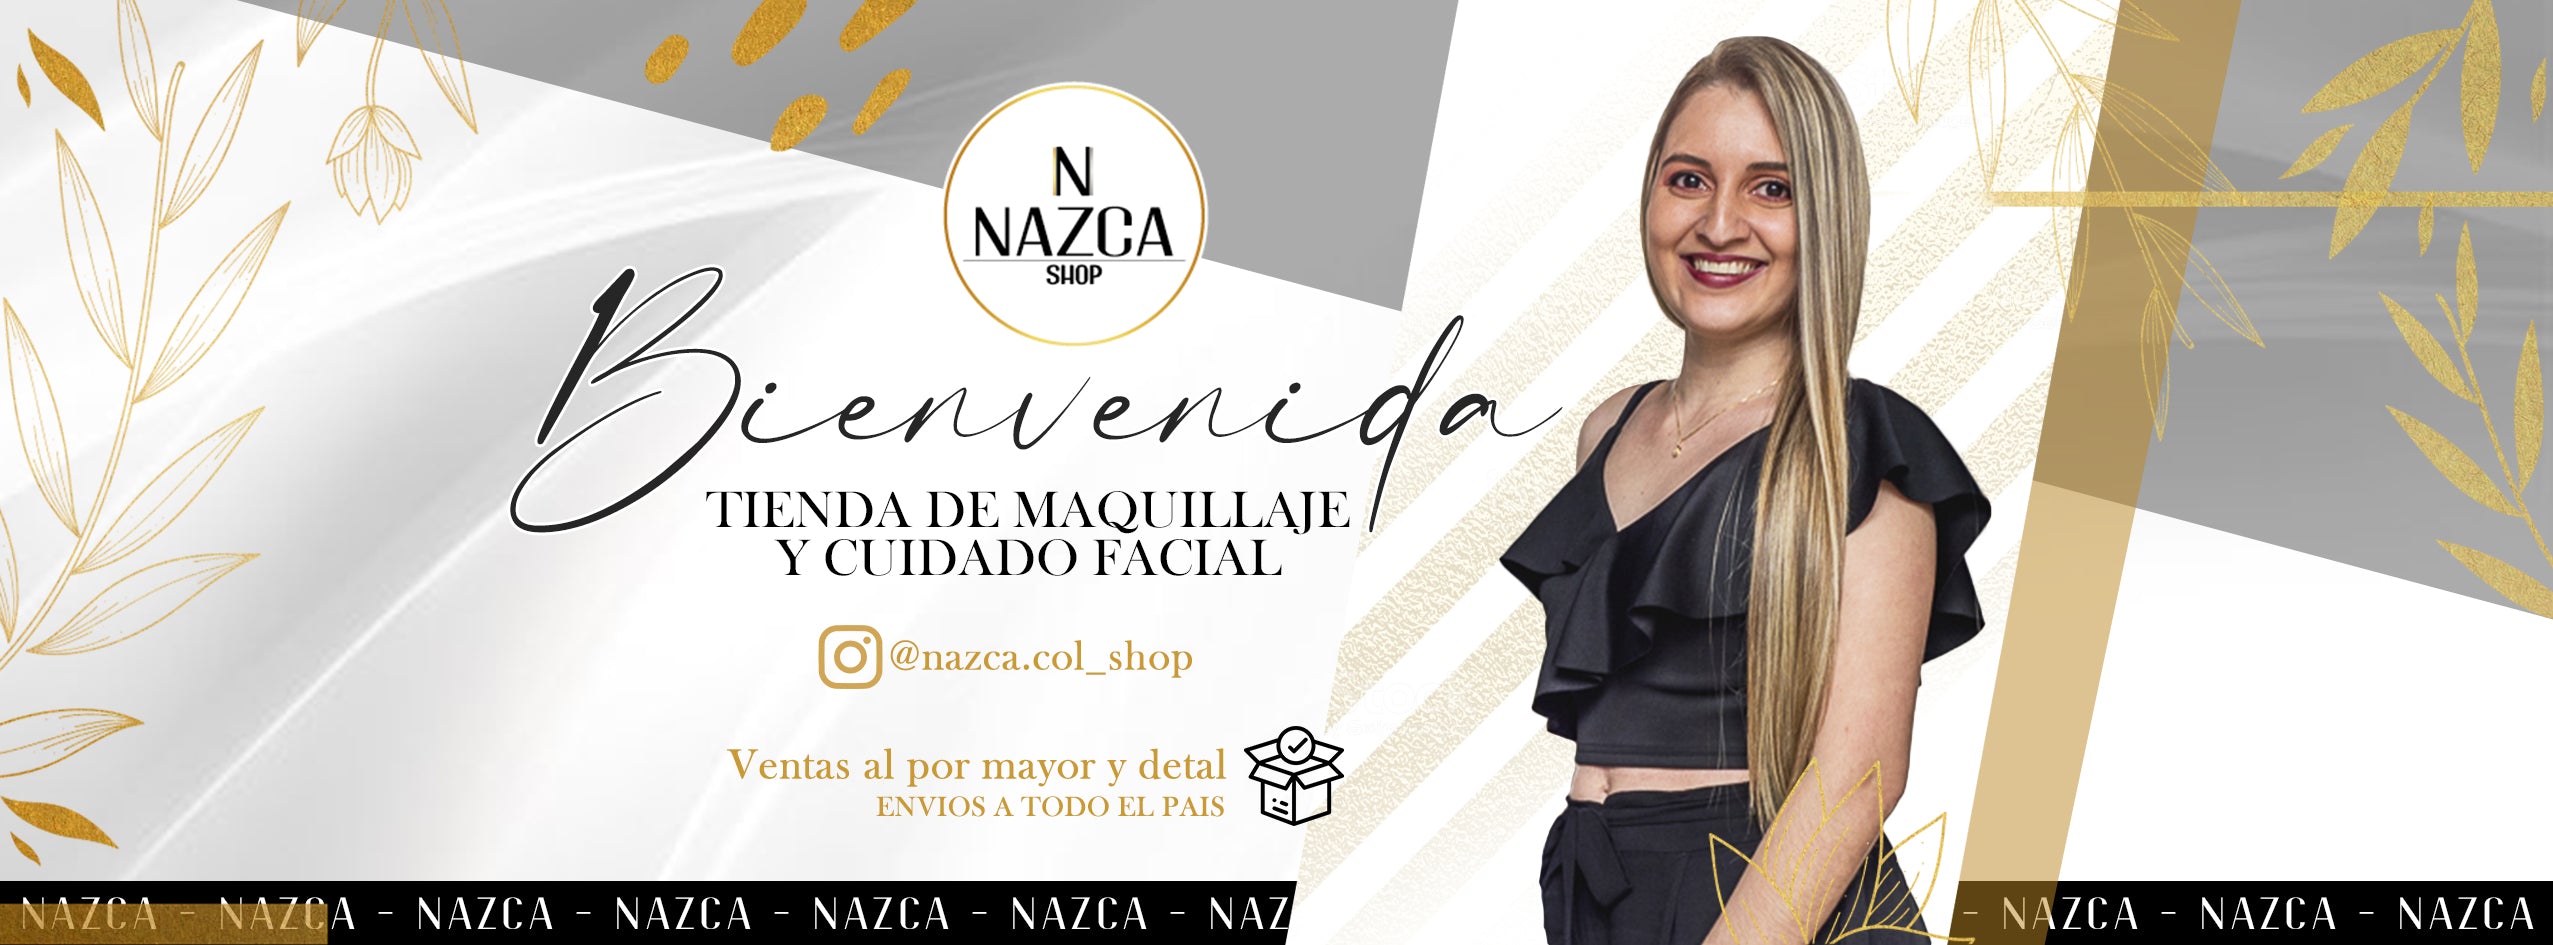 Nazca shop – Nazcashop